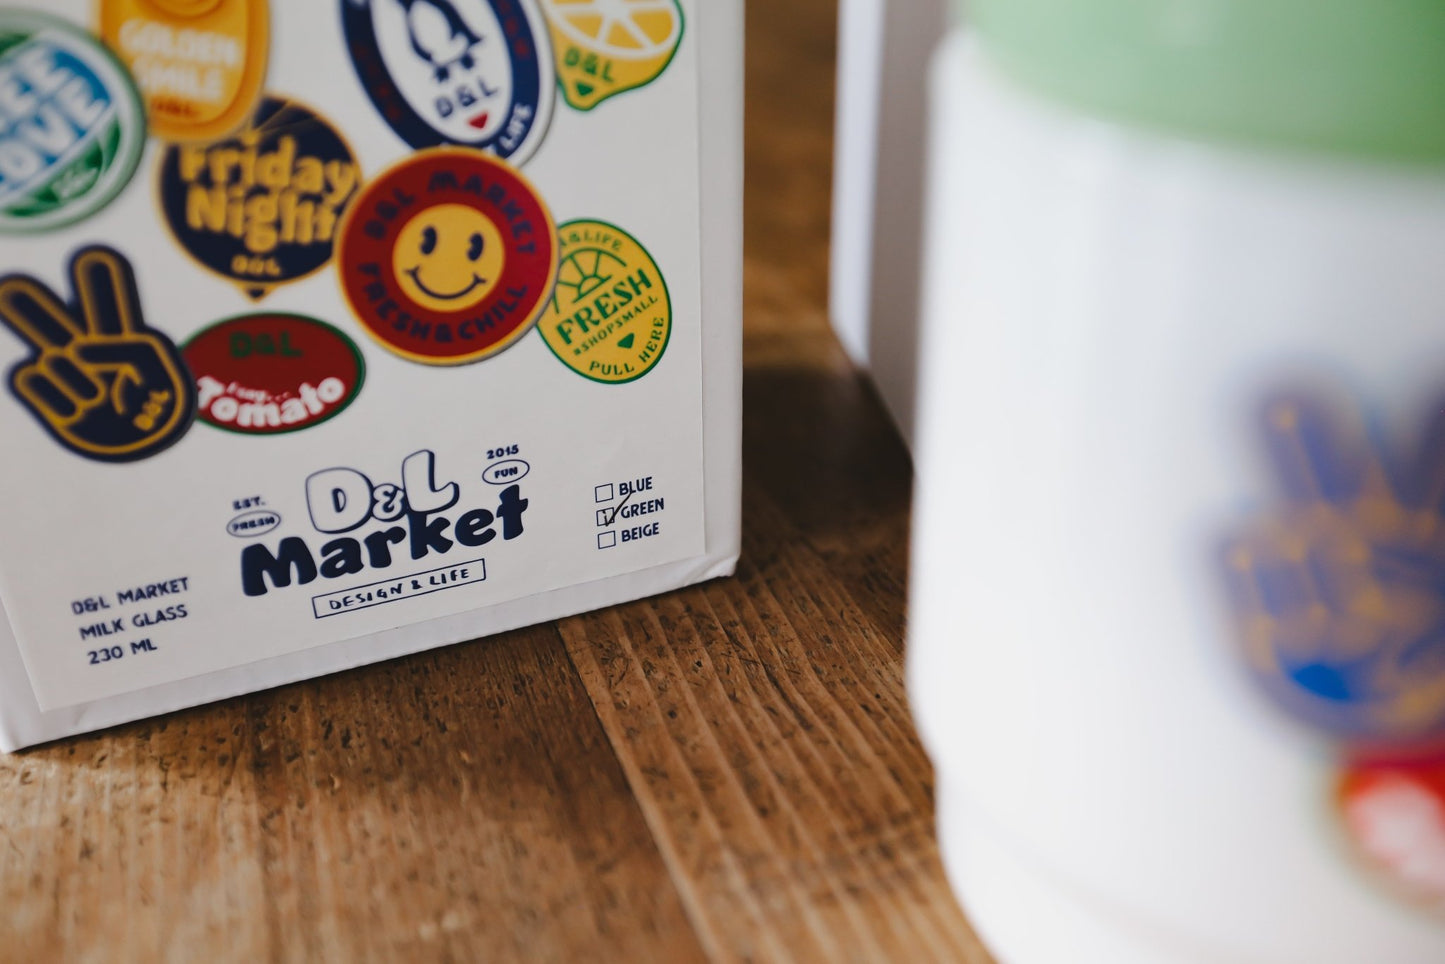 D&L Market Milk Glass Mug 牛奶杯 - A Design&Life Project